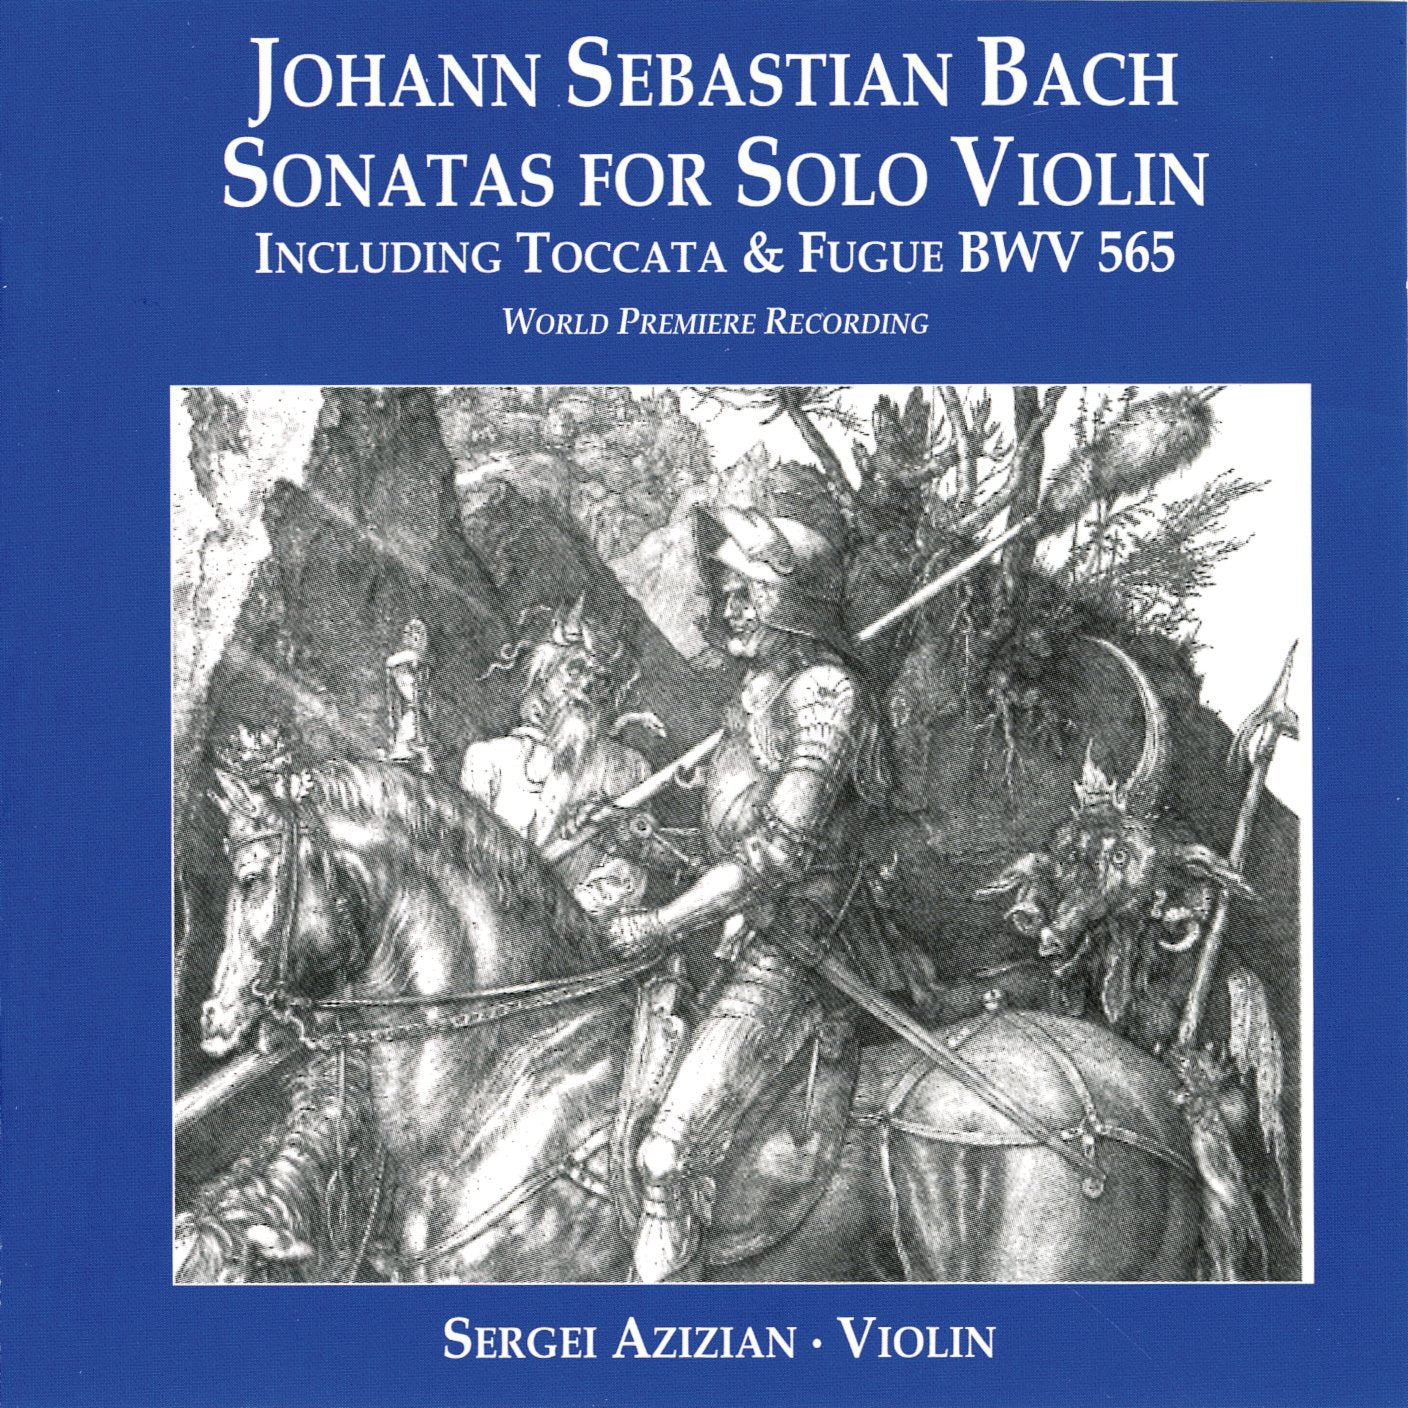 BACH: SONATAS FOR SOLO VIOLIN 1, 2 & 3; TOCCATA AND FUGUE, BWV 565 (arr.) - SERGEI AZIZIAN